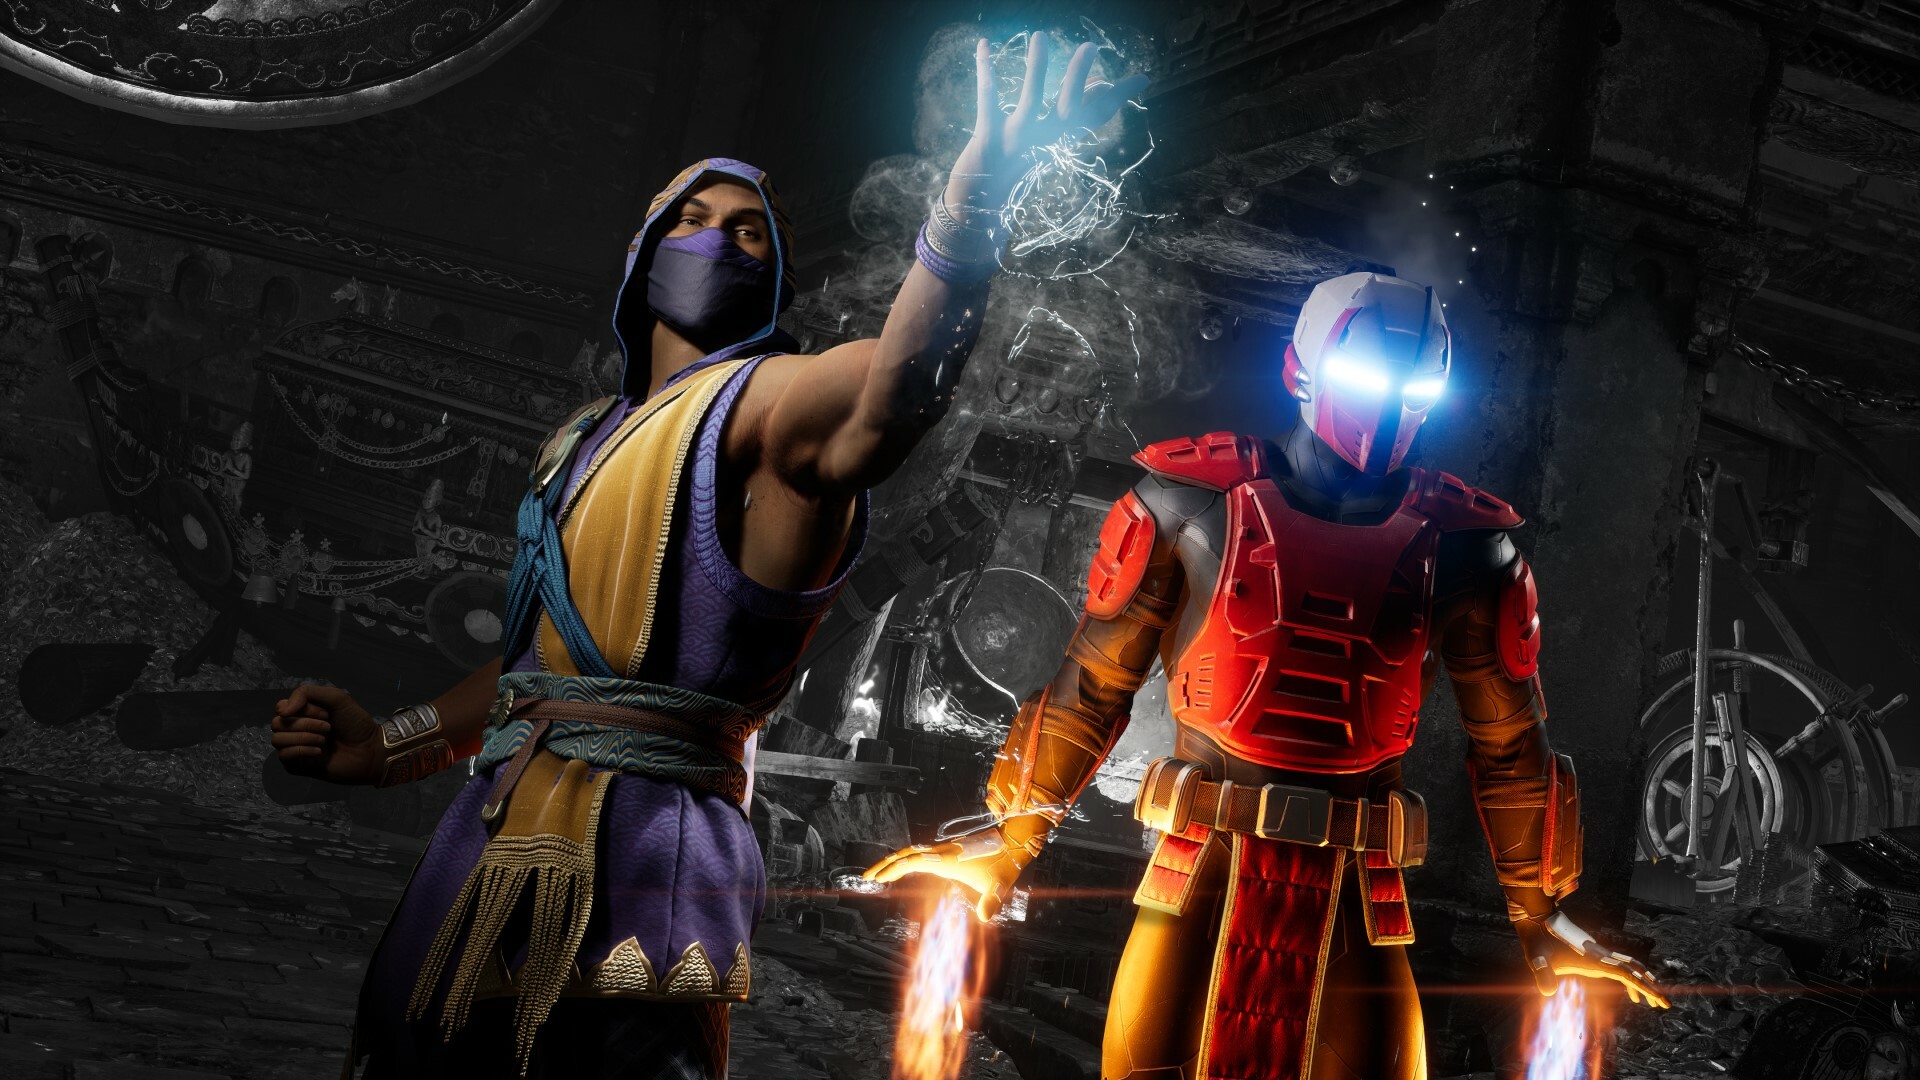 Mortal Kombat 1 Switch trailer featuring Steam achievement taken down